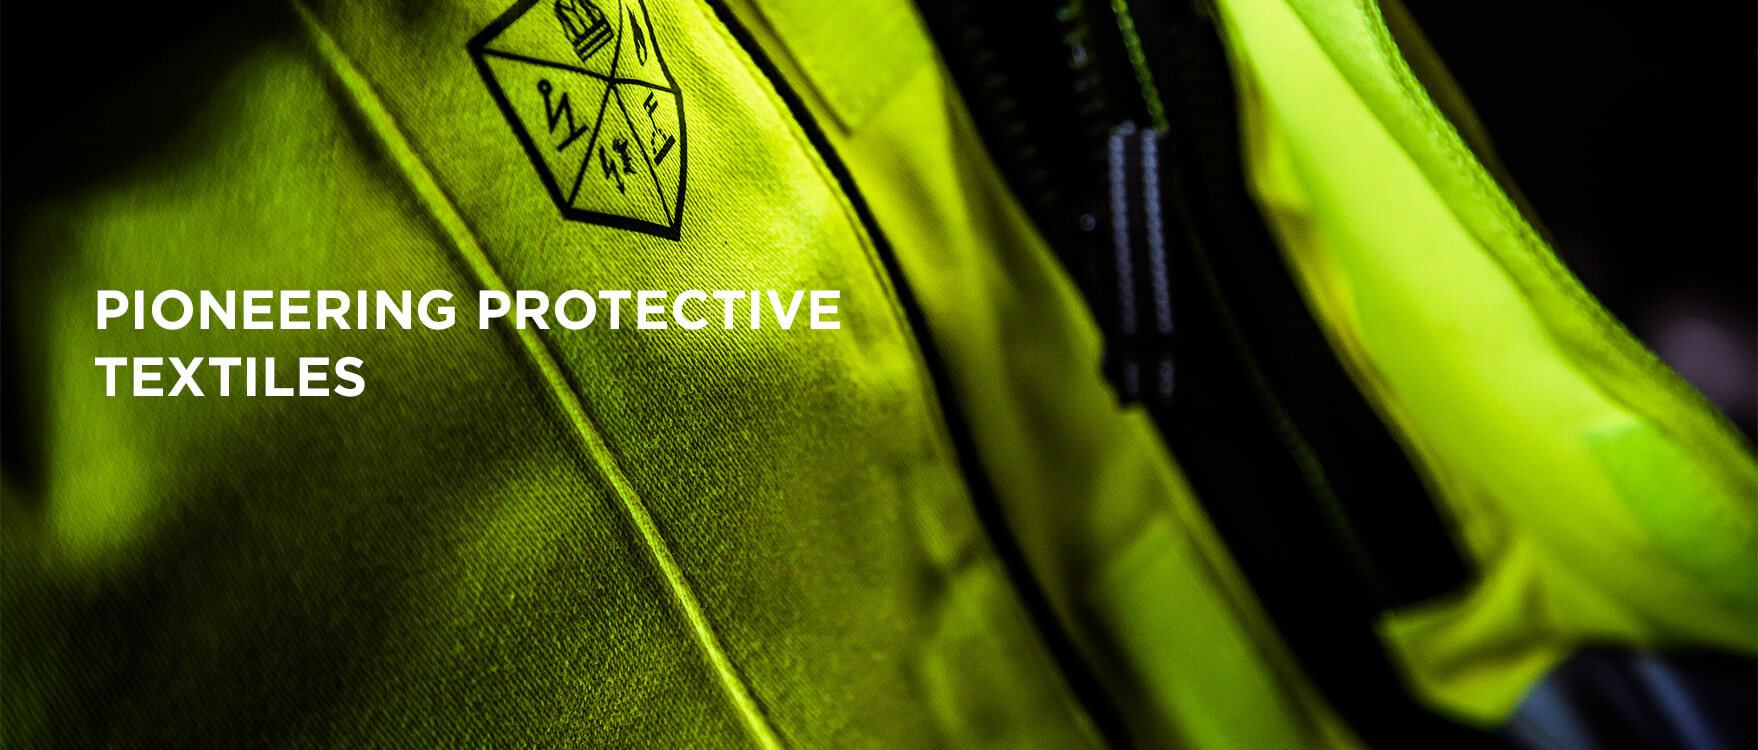 Pioneering protective textiles